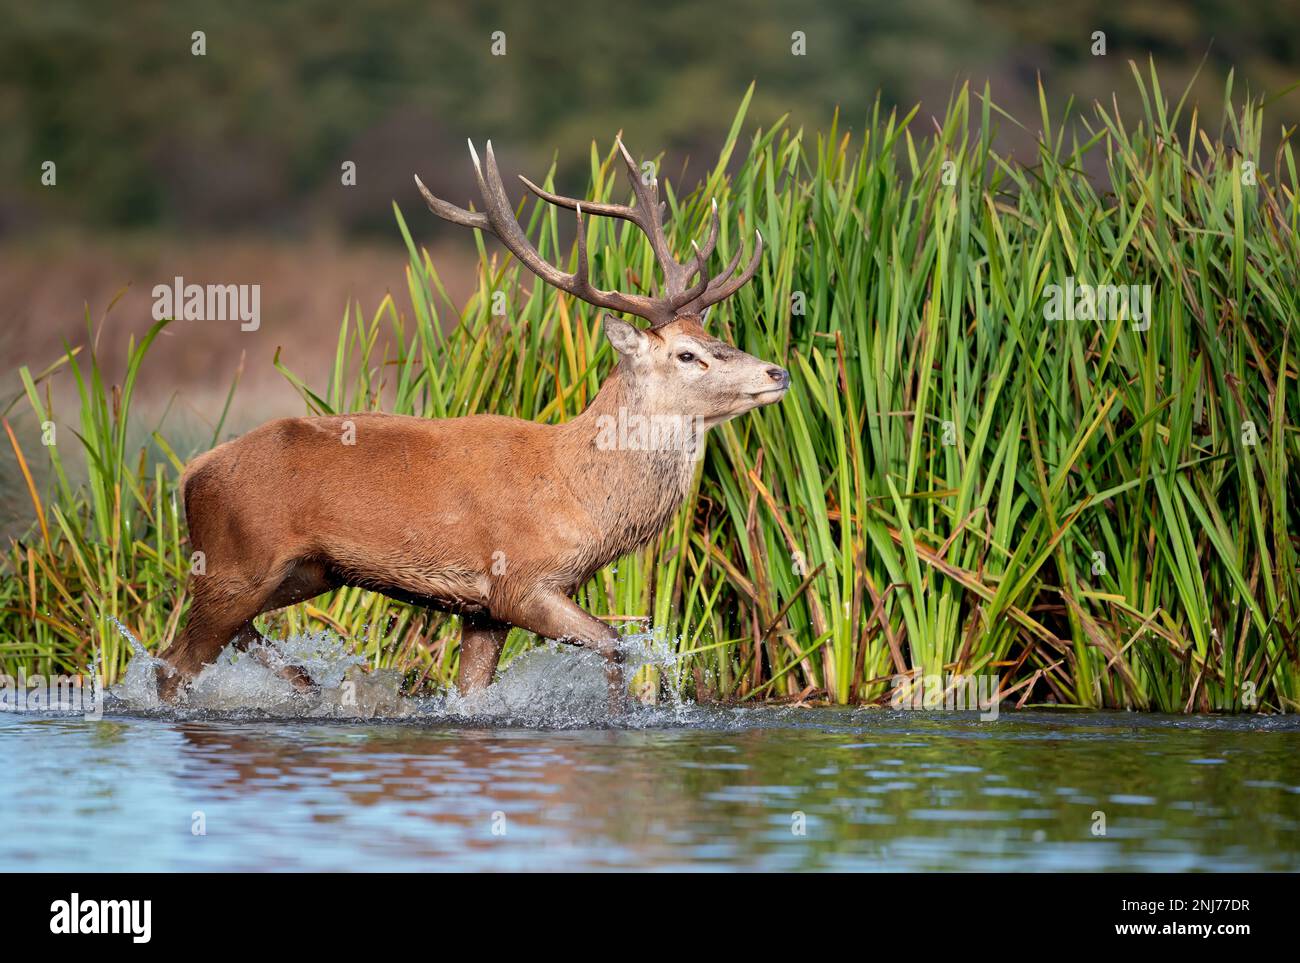 Nahaufnahme eines Rotwild-Hirsches im Wasser während der Wetzsaison, Großbritannien. Stockfoto